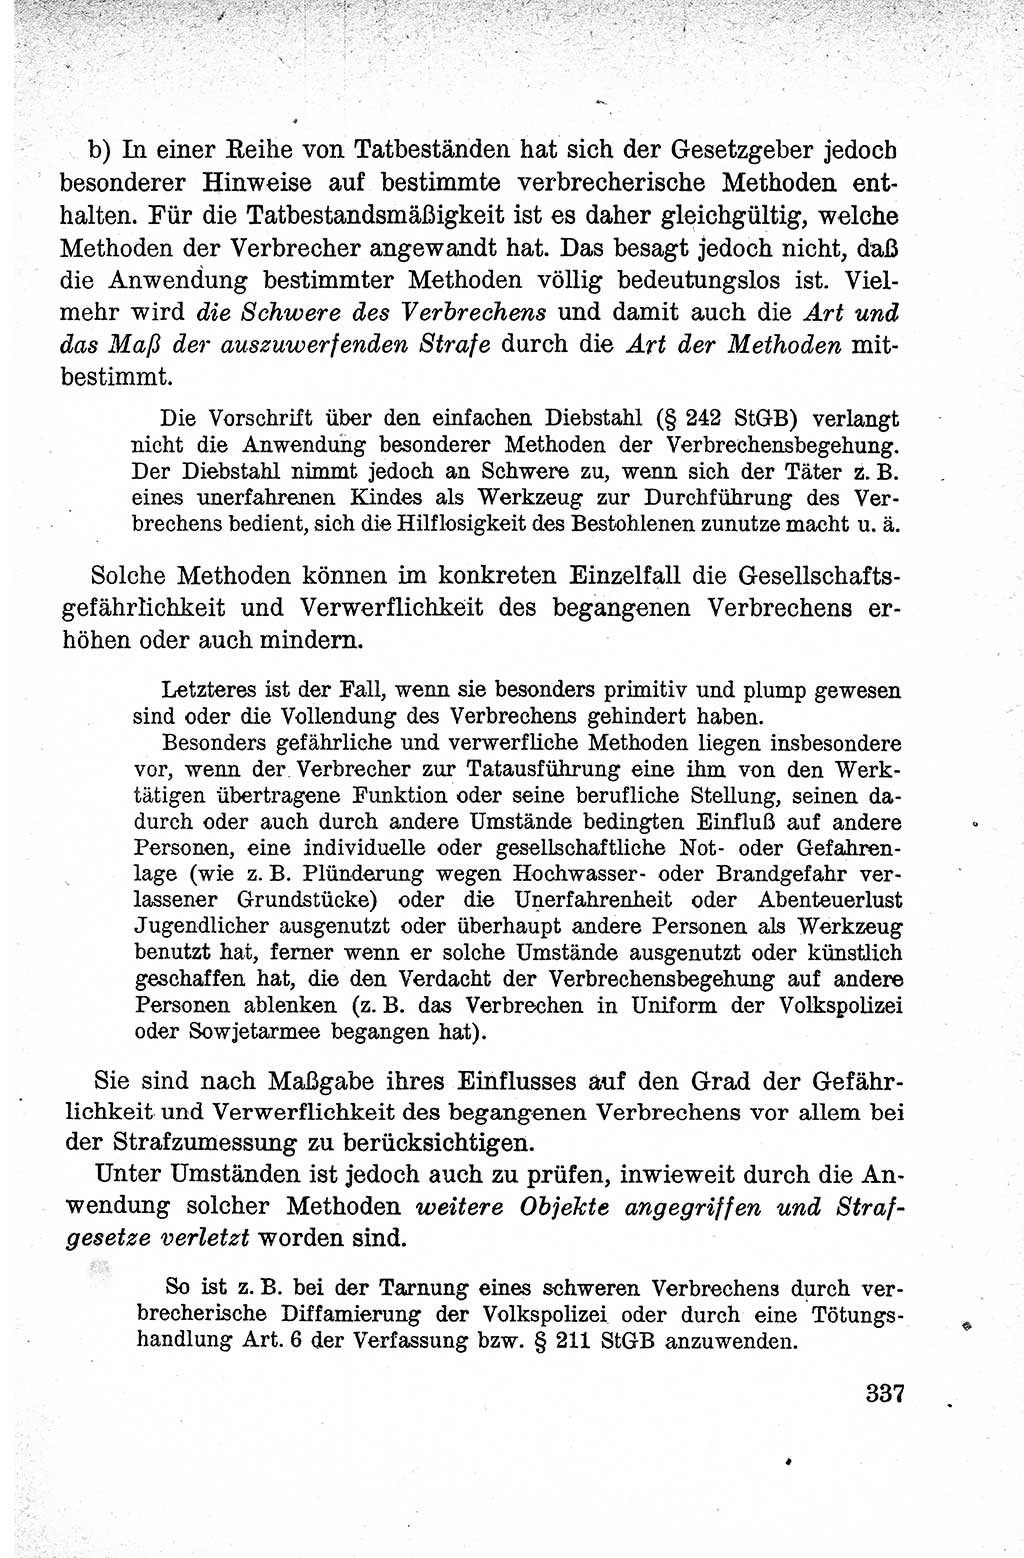 Lehrbuch des Strafrechts der Deutschen Demokratischen Republik (DDR), Allgemeiner Teil 1959, Seite 337 (Lb. Strafr. DDR AT 1959, S. 337)